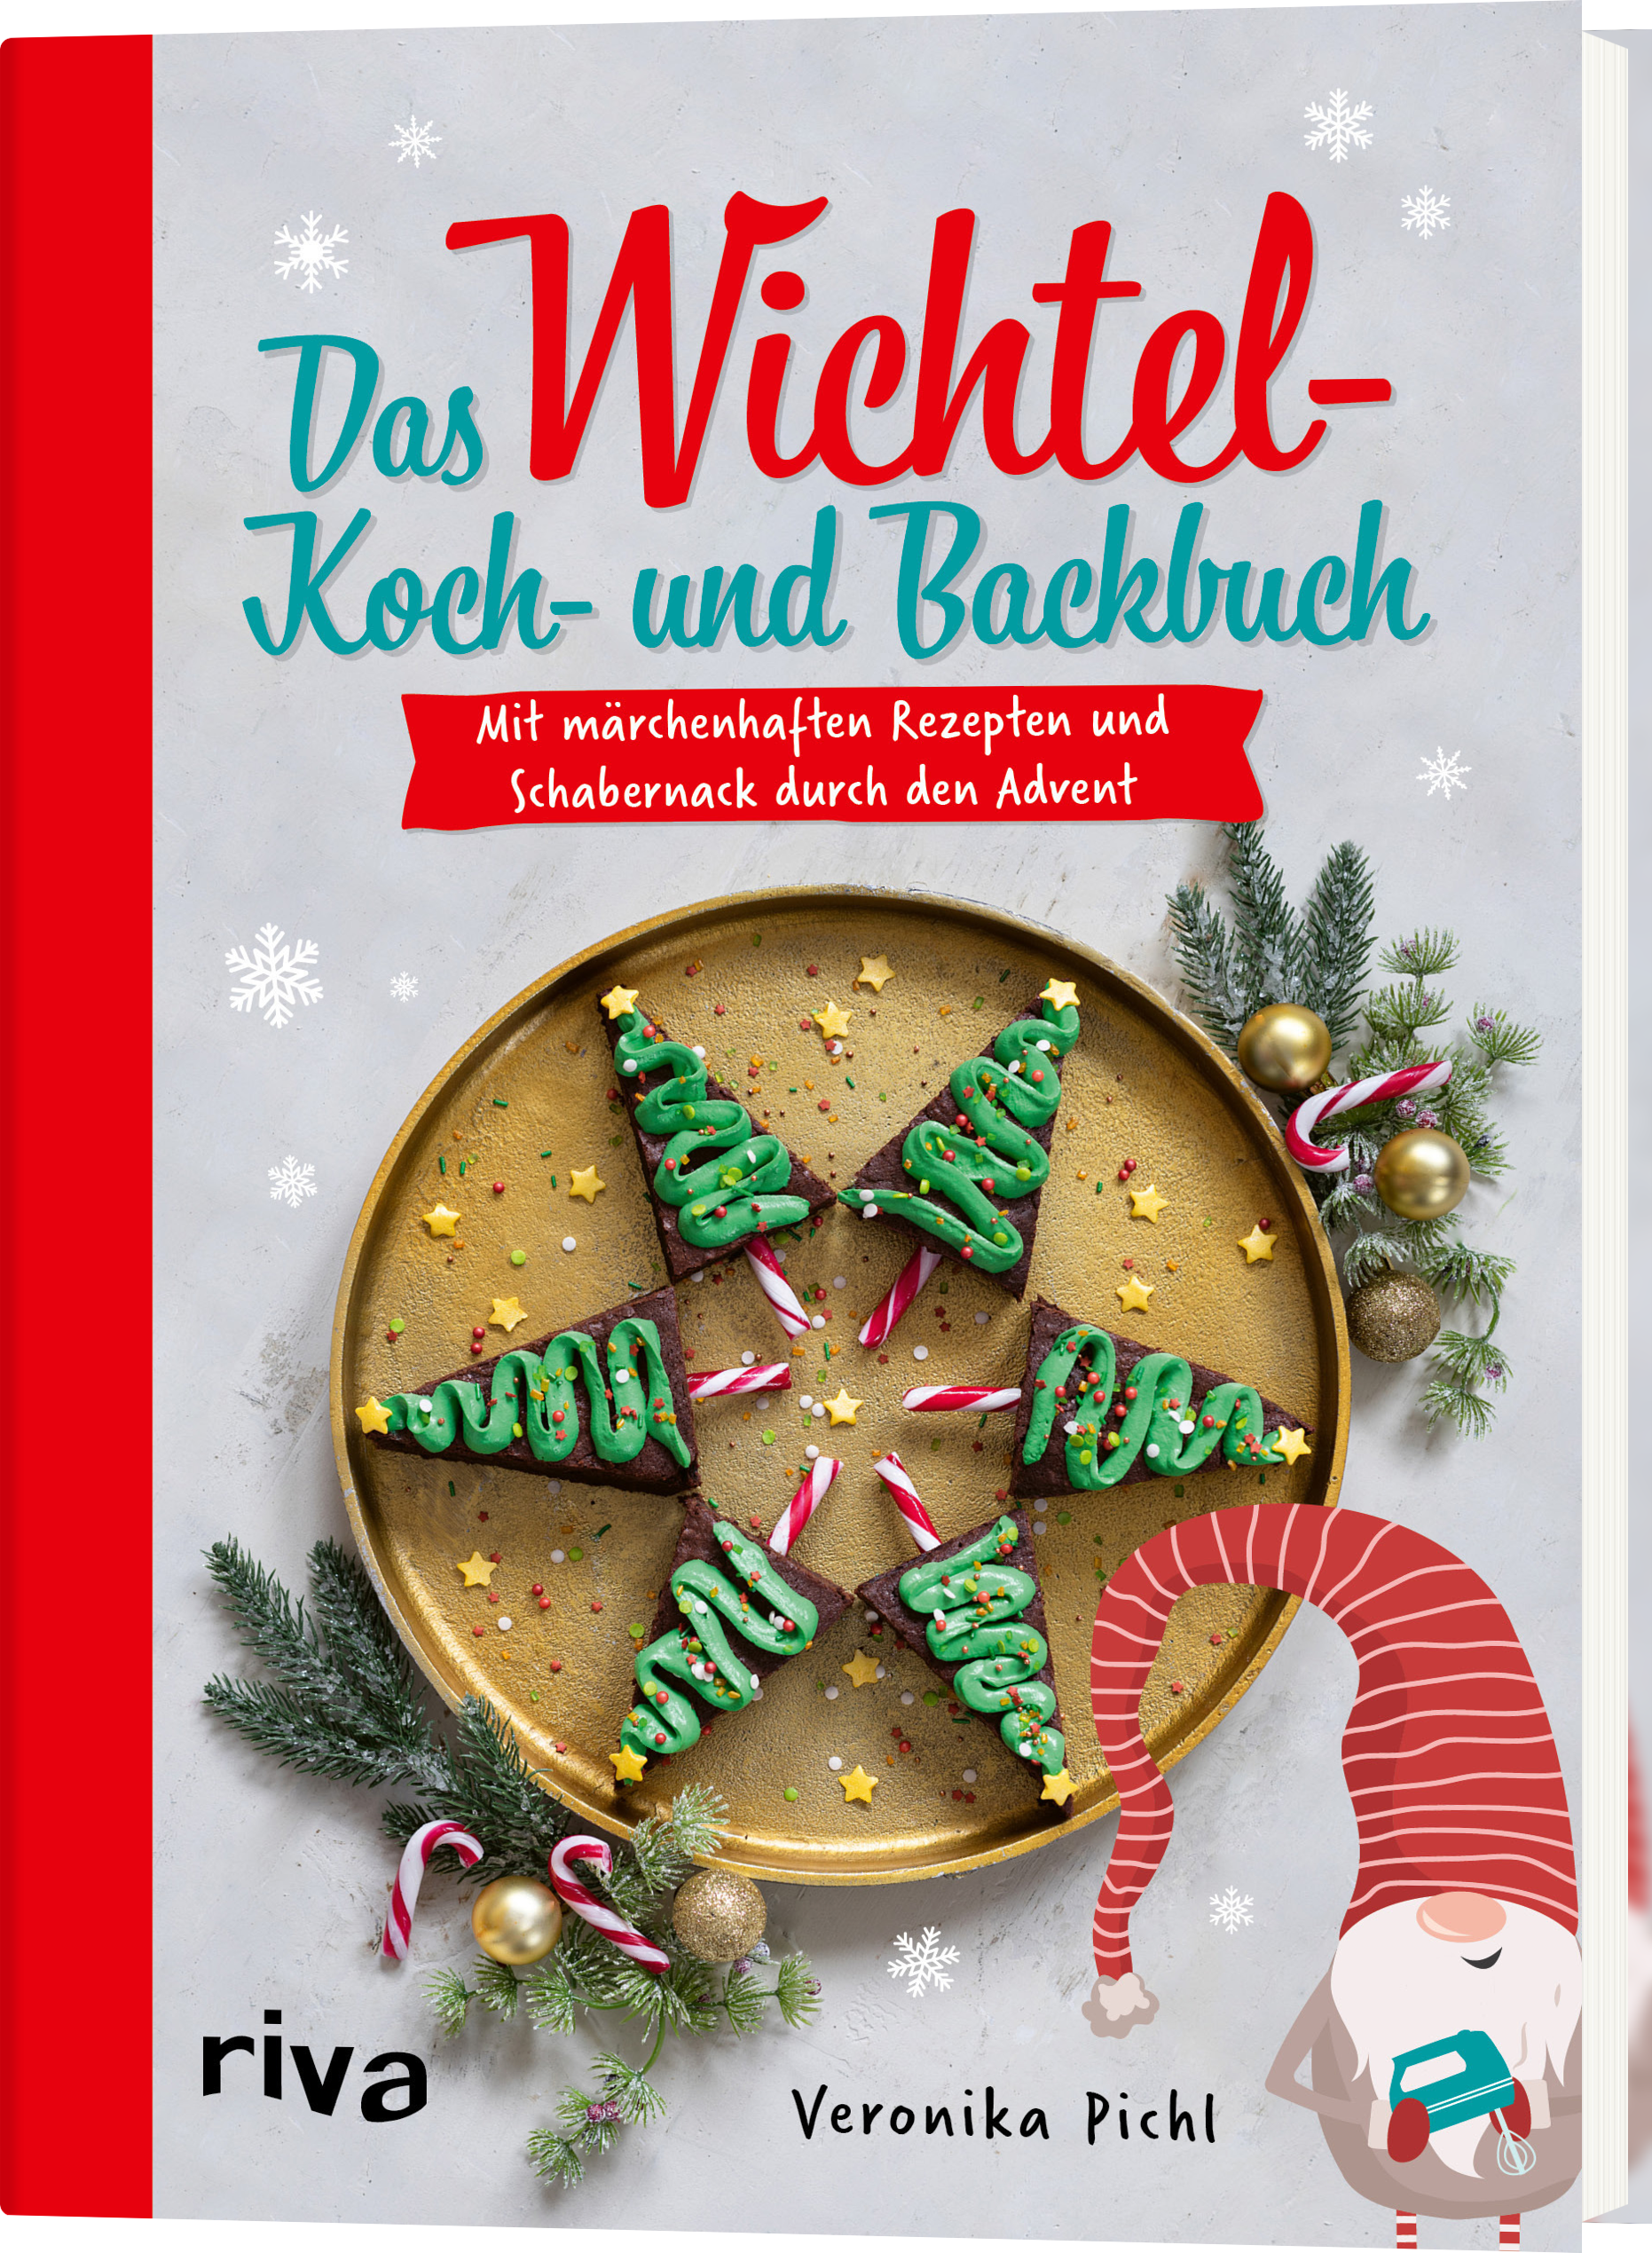 Das Wichtel-Koch- und Backbuch